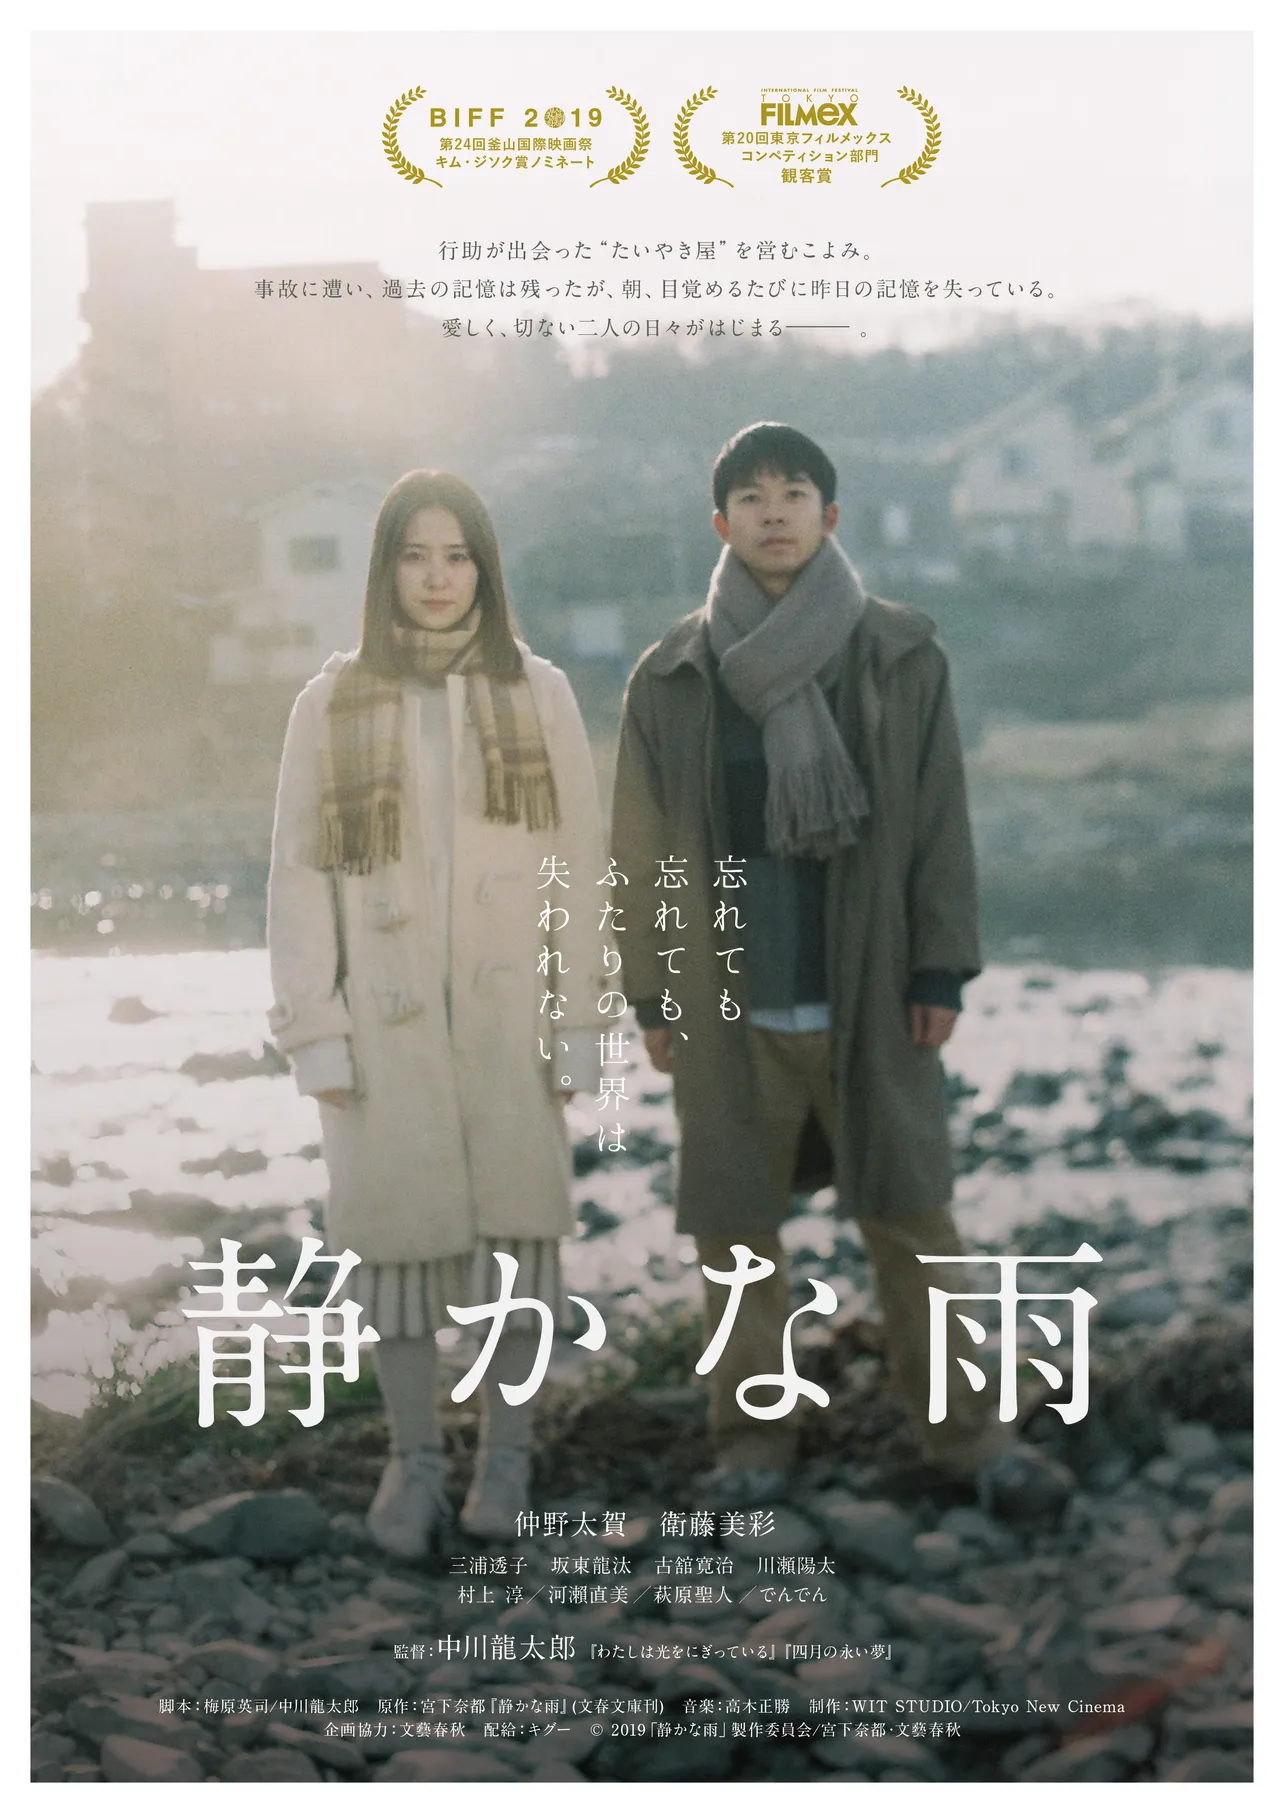 仲野太賀と衛藤美彩がW主演を務める映画「静かな雨」の2020年2月7日(金)の公開を前に、予告編とポスタービジュアルが解禁された